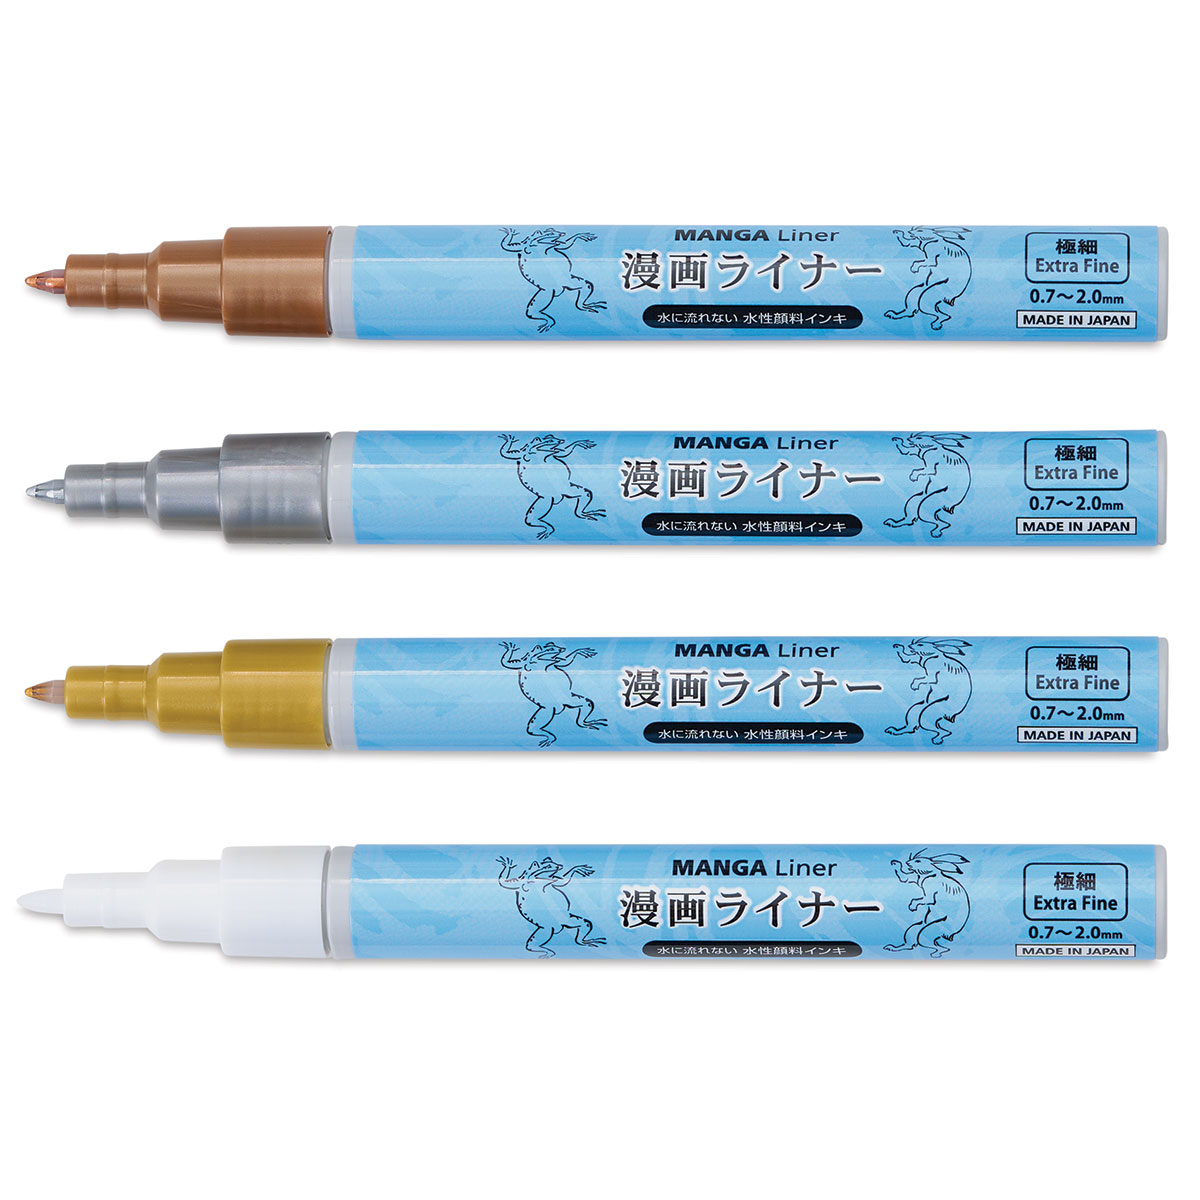 Liner Pens - Neutral Metallic Colors, of | BLICK Art Materials